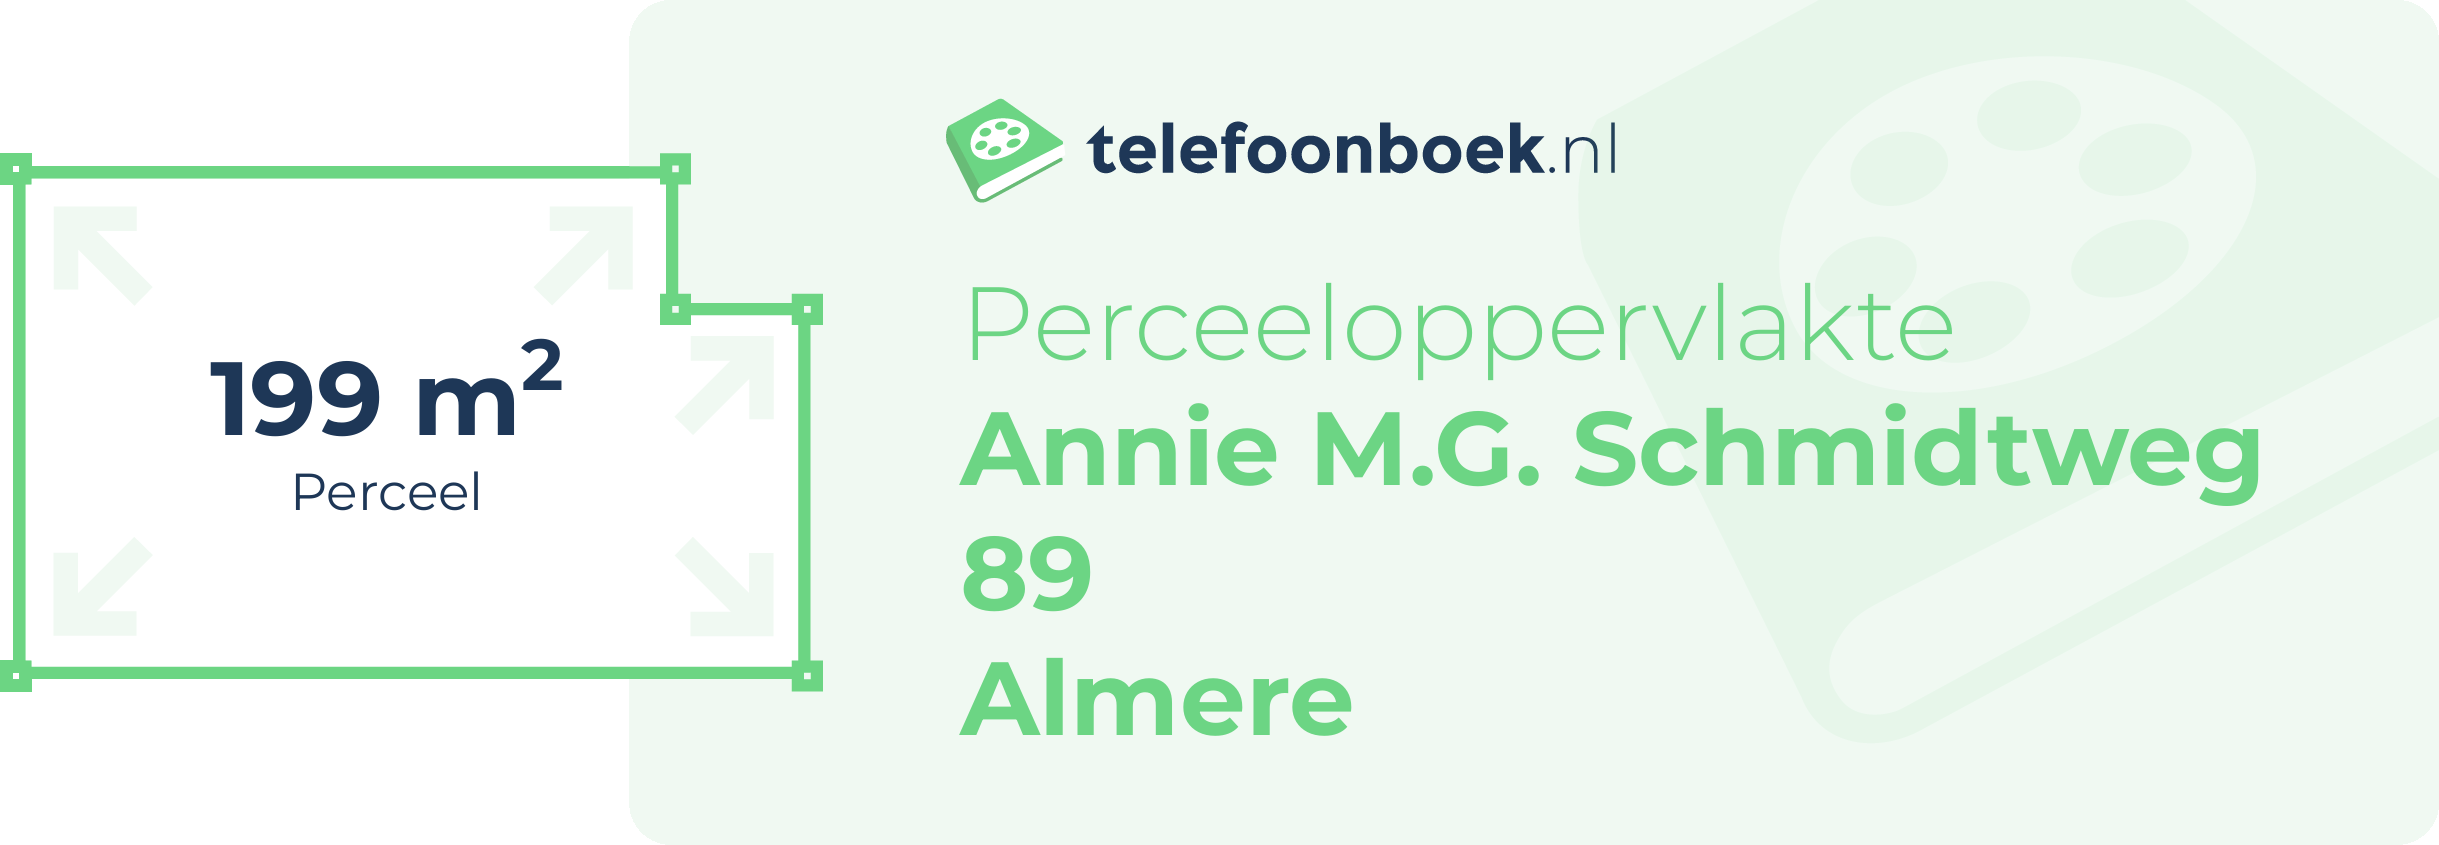 Perceeloppervlakte Annie M.G. Schmidtweg 89 Almere